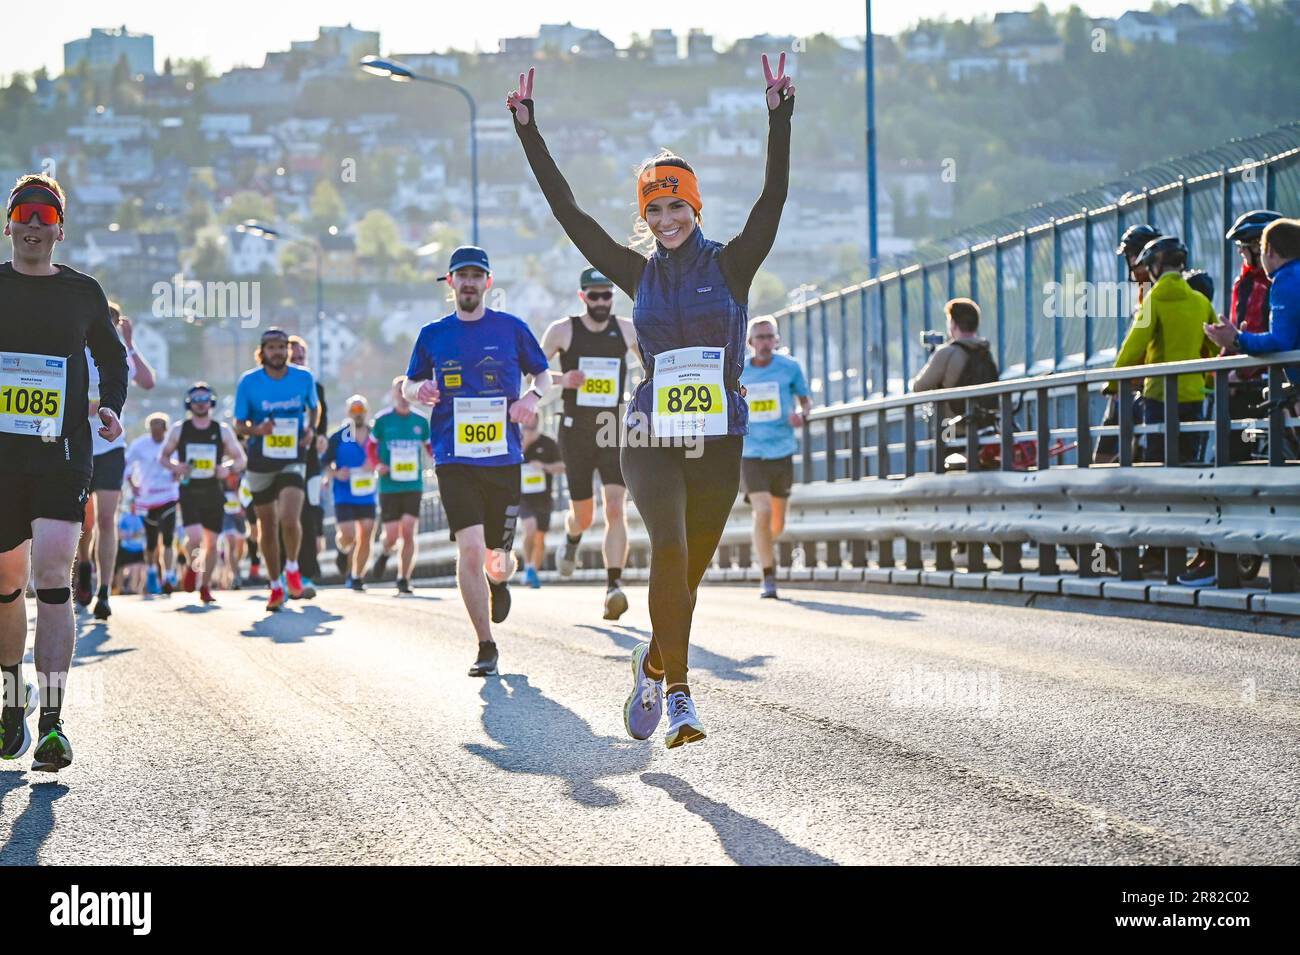 Midnight Sun Marathon Norway – Race CONNECTIONS